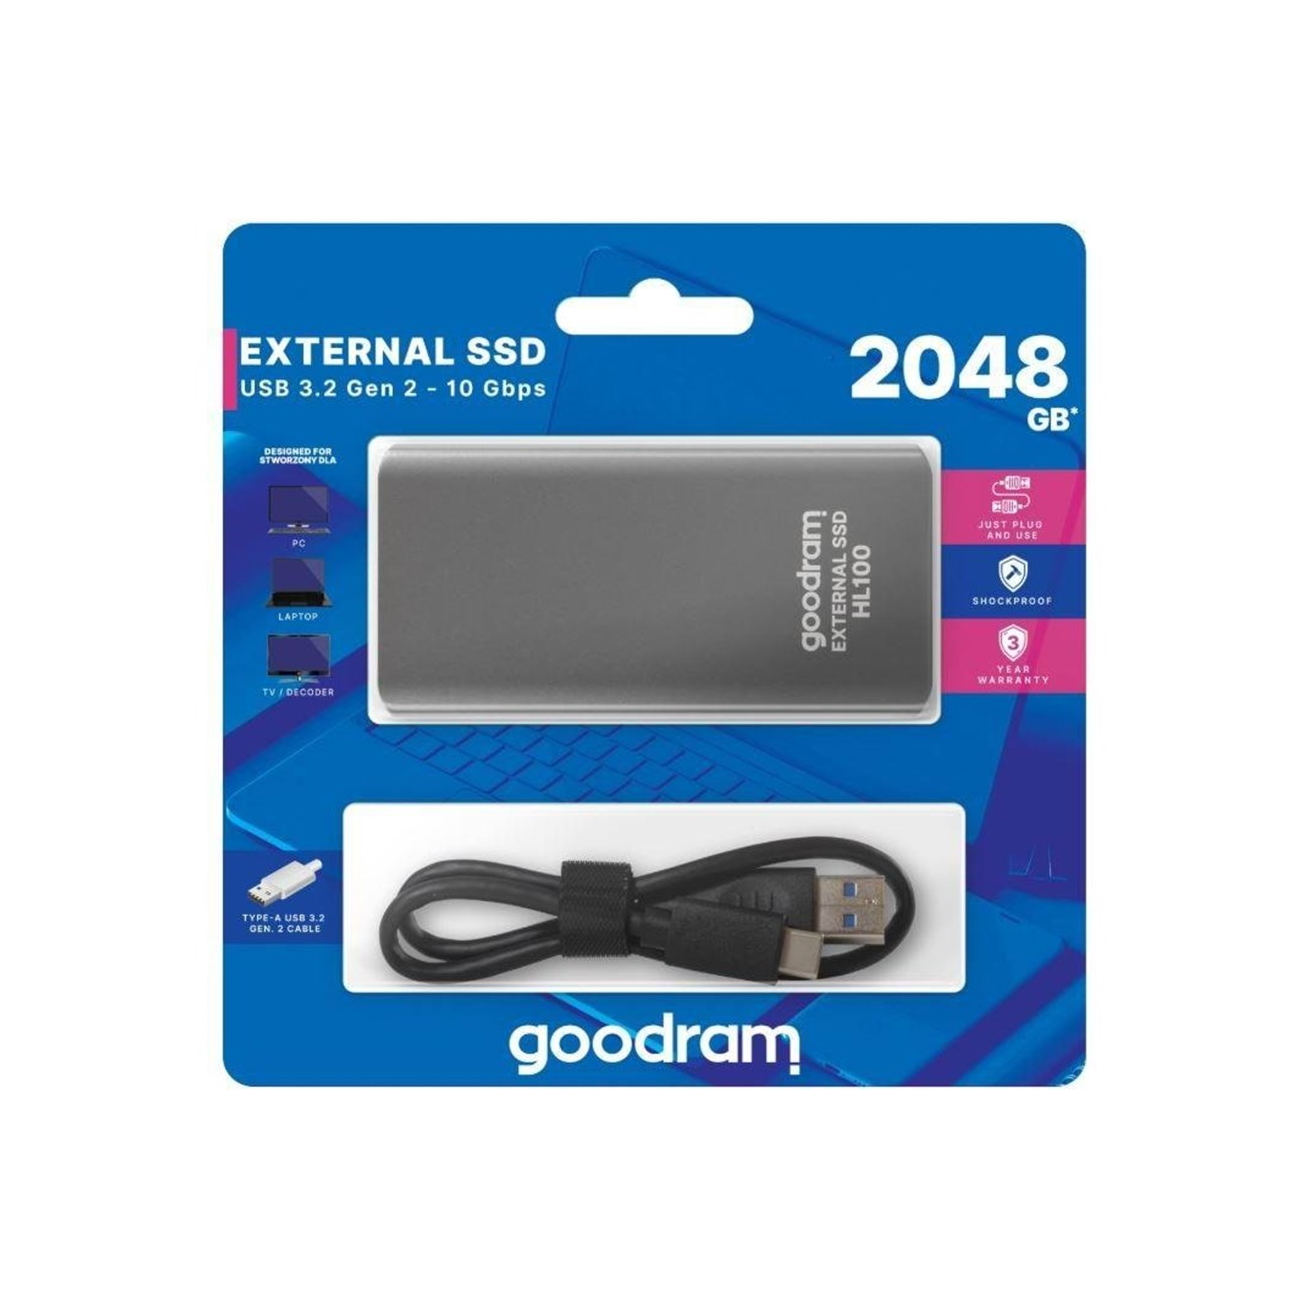 GB / extern, GOOD USB3.2 grau 2048 2TB SSD, 2 RAM HL100 / 10Gbps, SSD Gen.